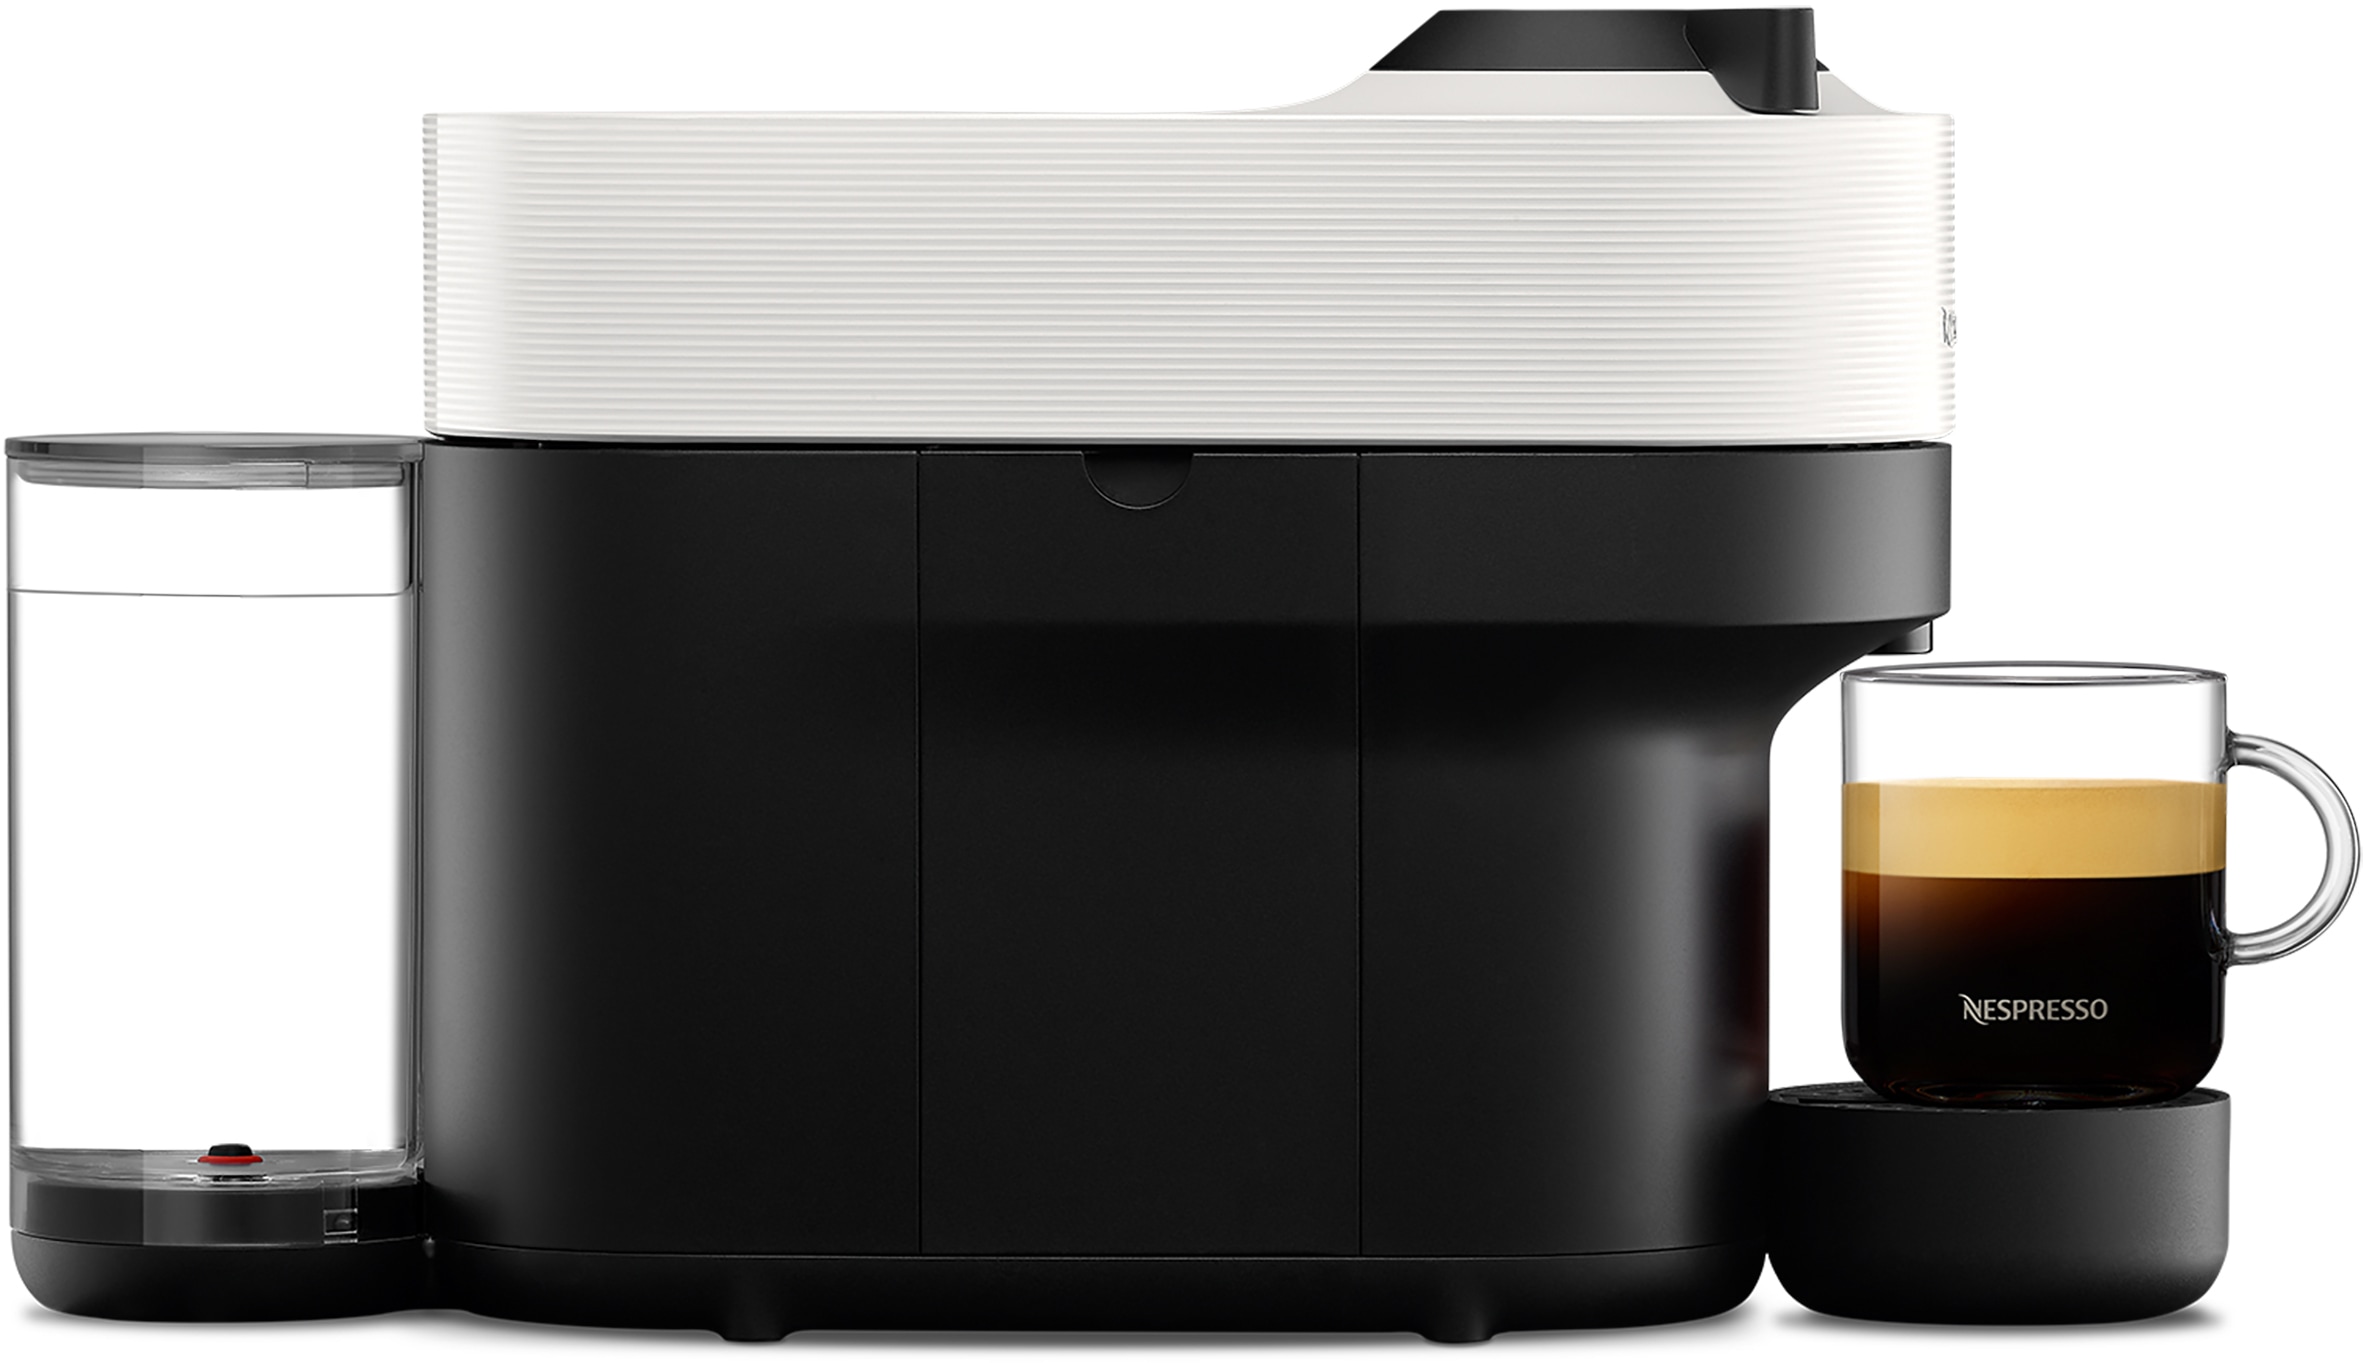 Nespresso Kapselmaschine »Vertuo Pop XN9201 von Krups«, 560 ml Kapazität, aut. Kapselerkennung, One-Touch, 4 Tassengrößen